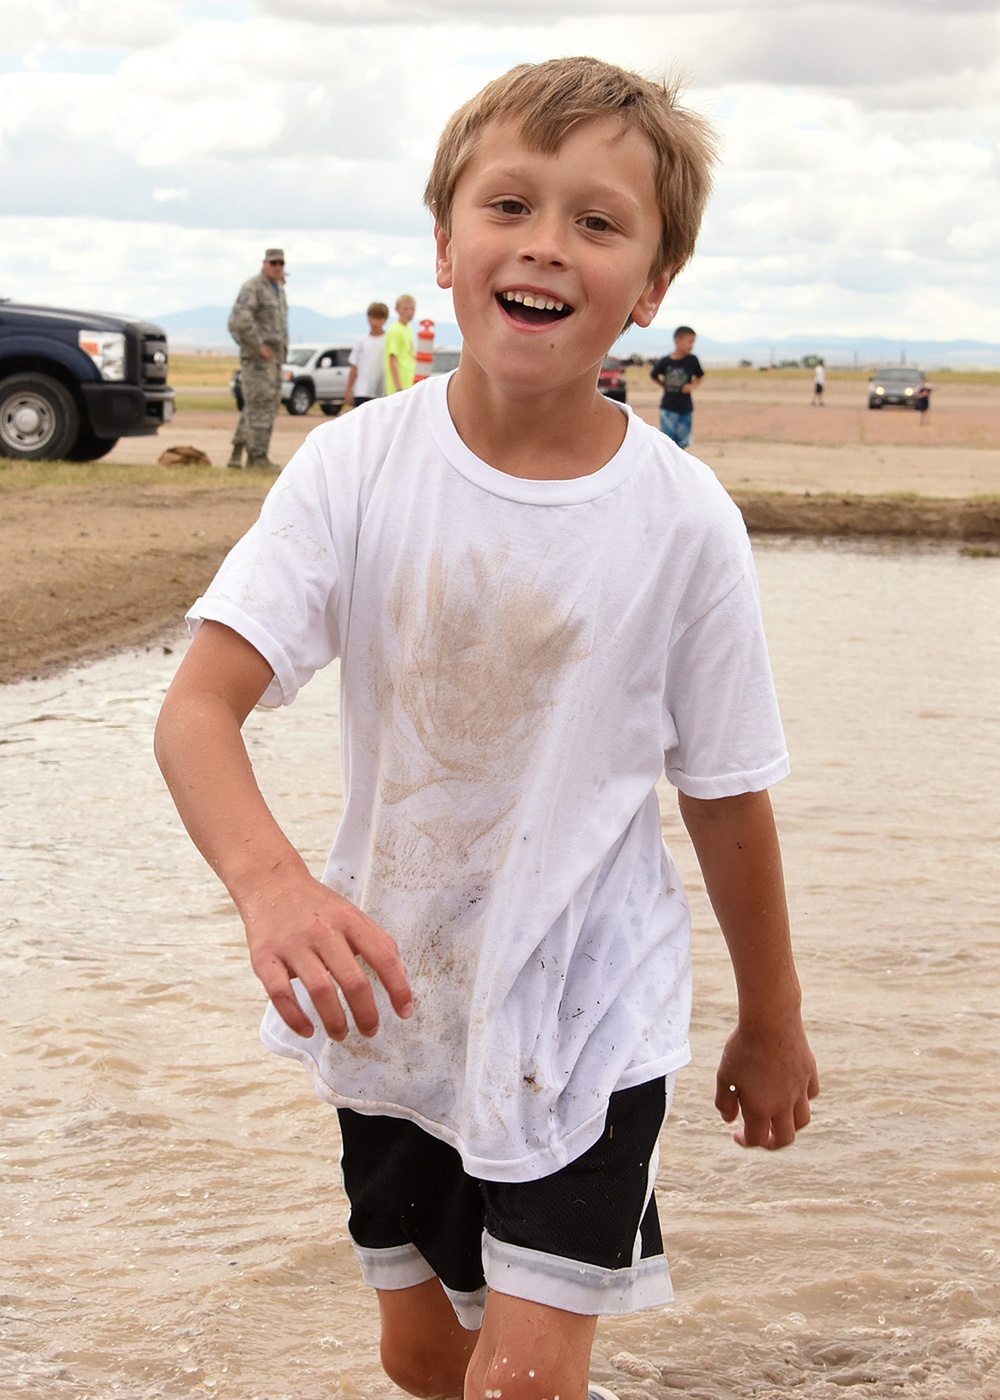 Fun in the mud